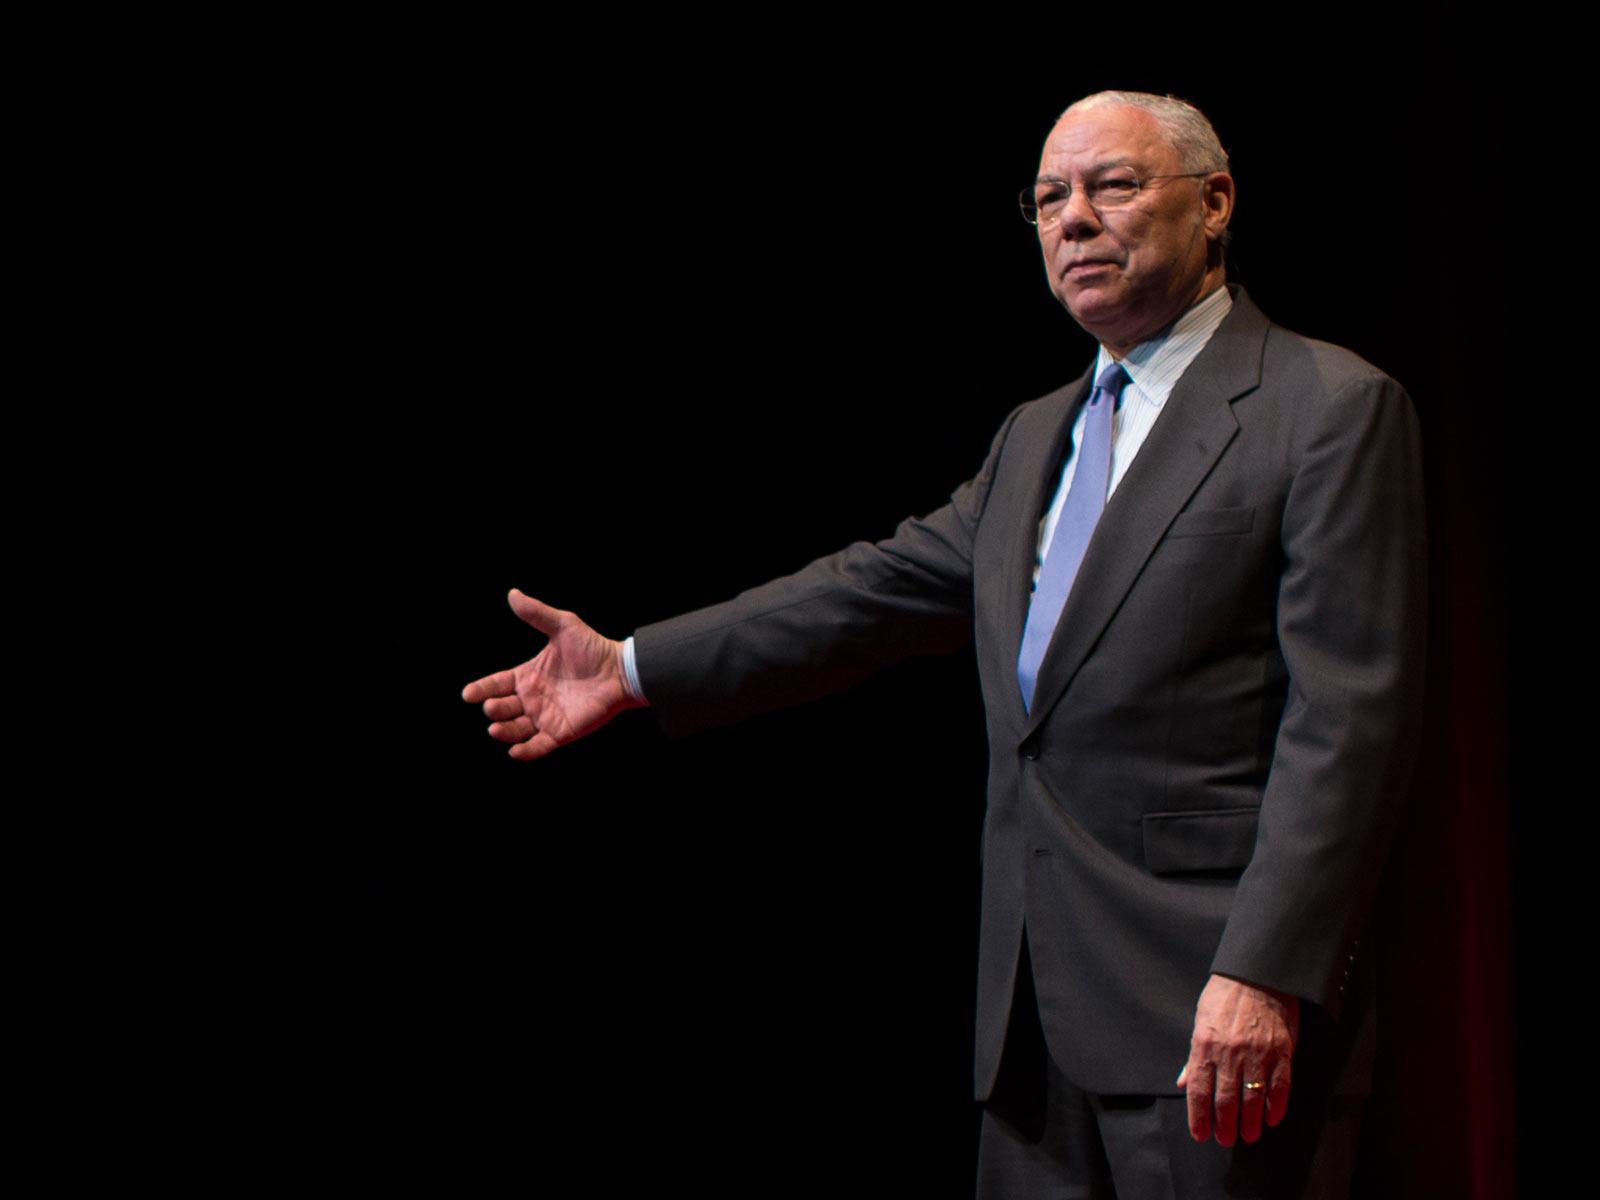 콜린 파월(Colin Powell): 아이들은 규율이 필요합니다. | Colin Powell